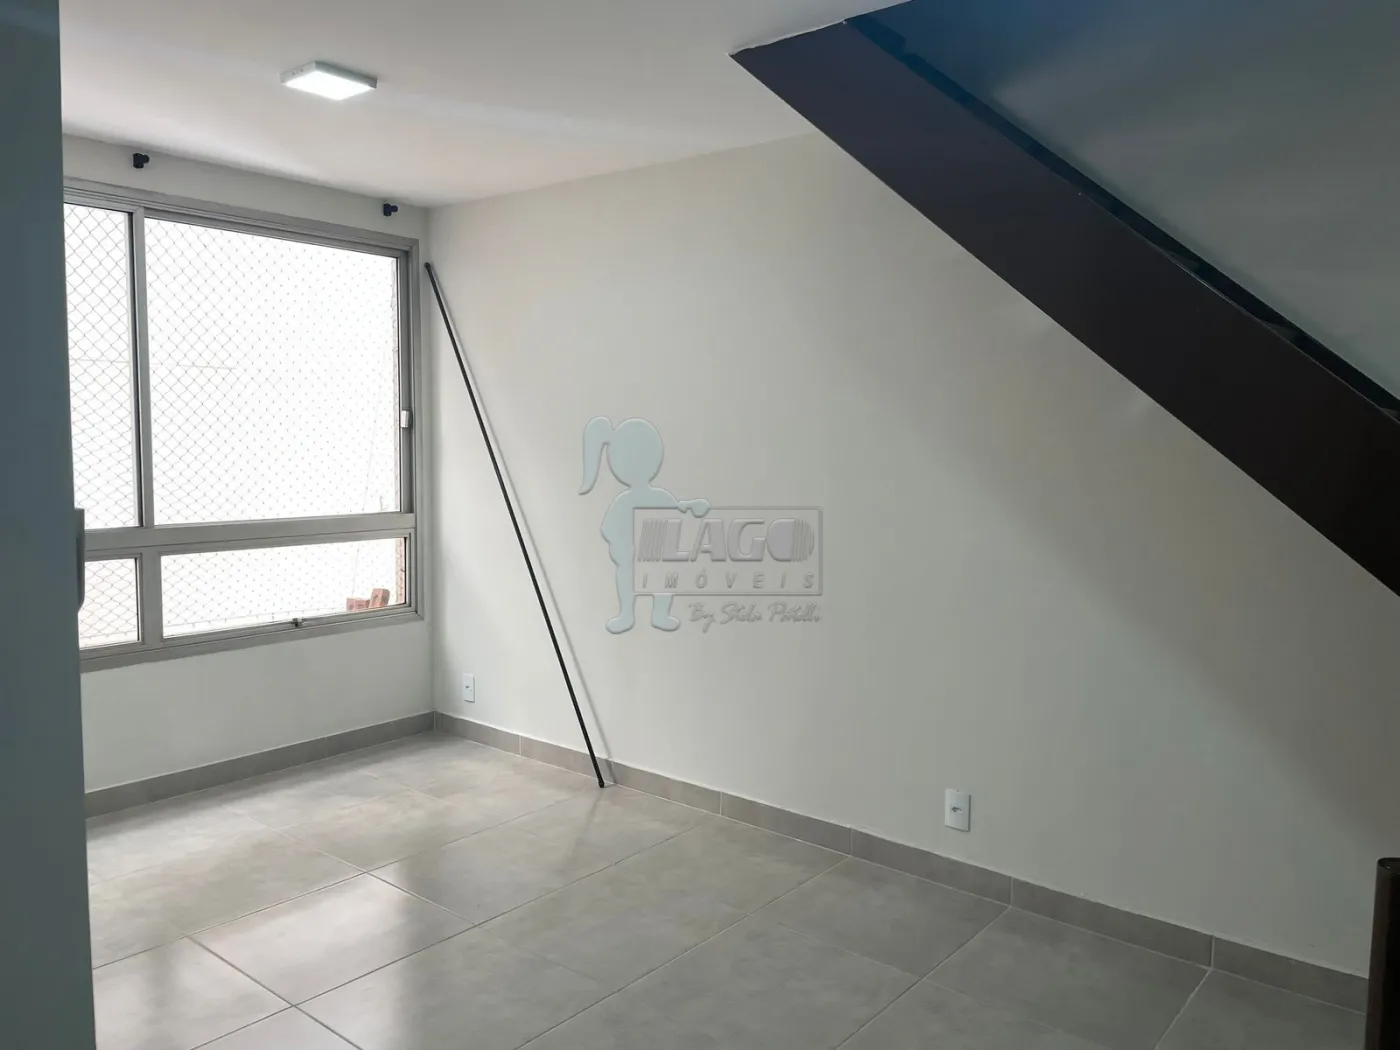 Alugar Apartamentos / Padrão em Ribeirão Preto R$ 800,00 - Foto 4